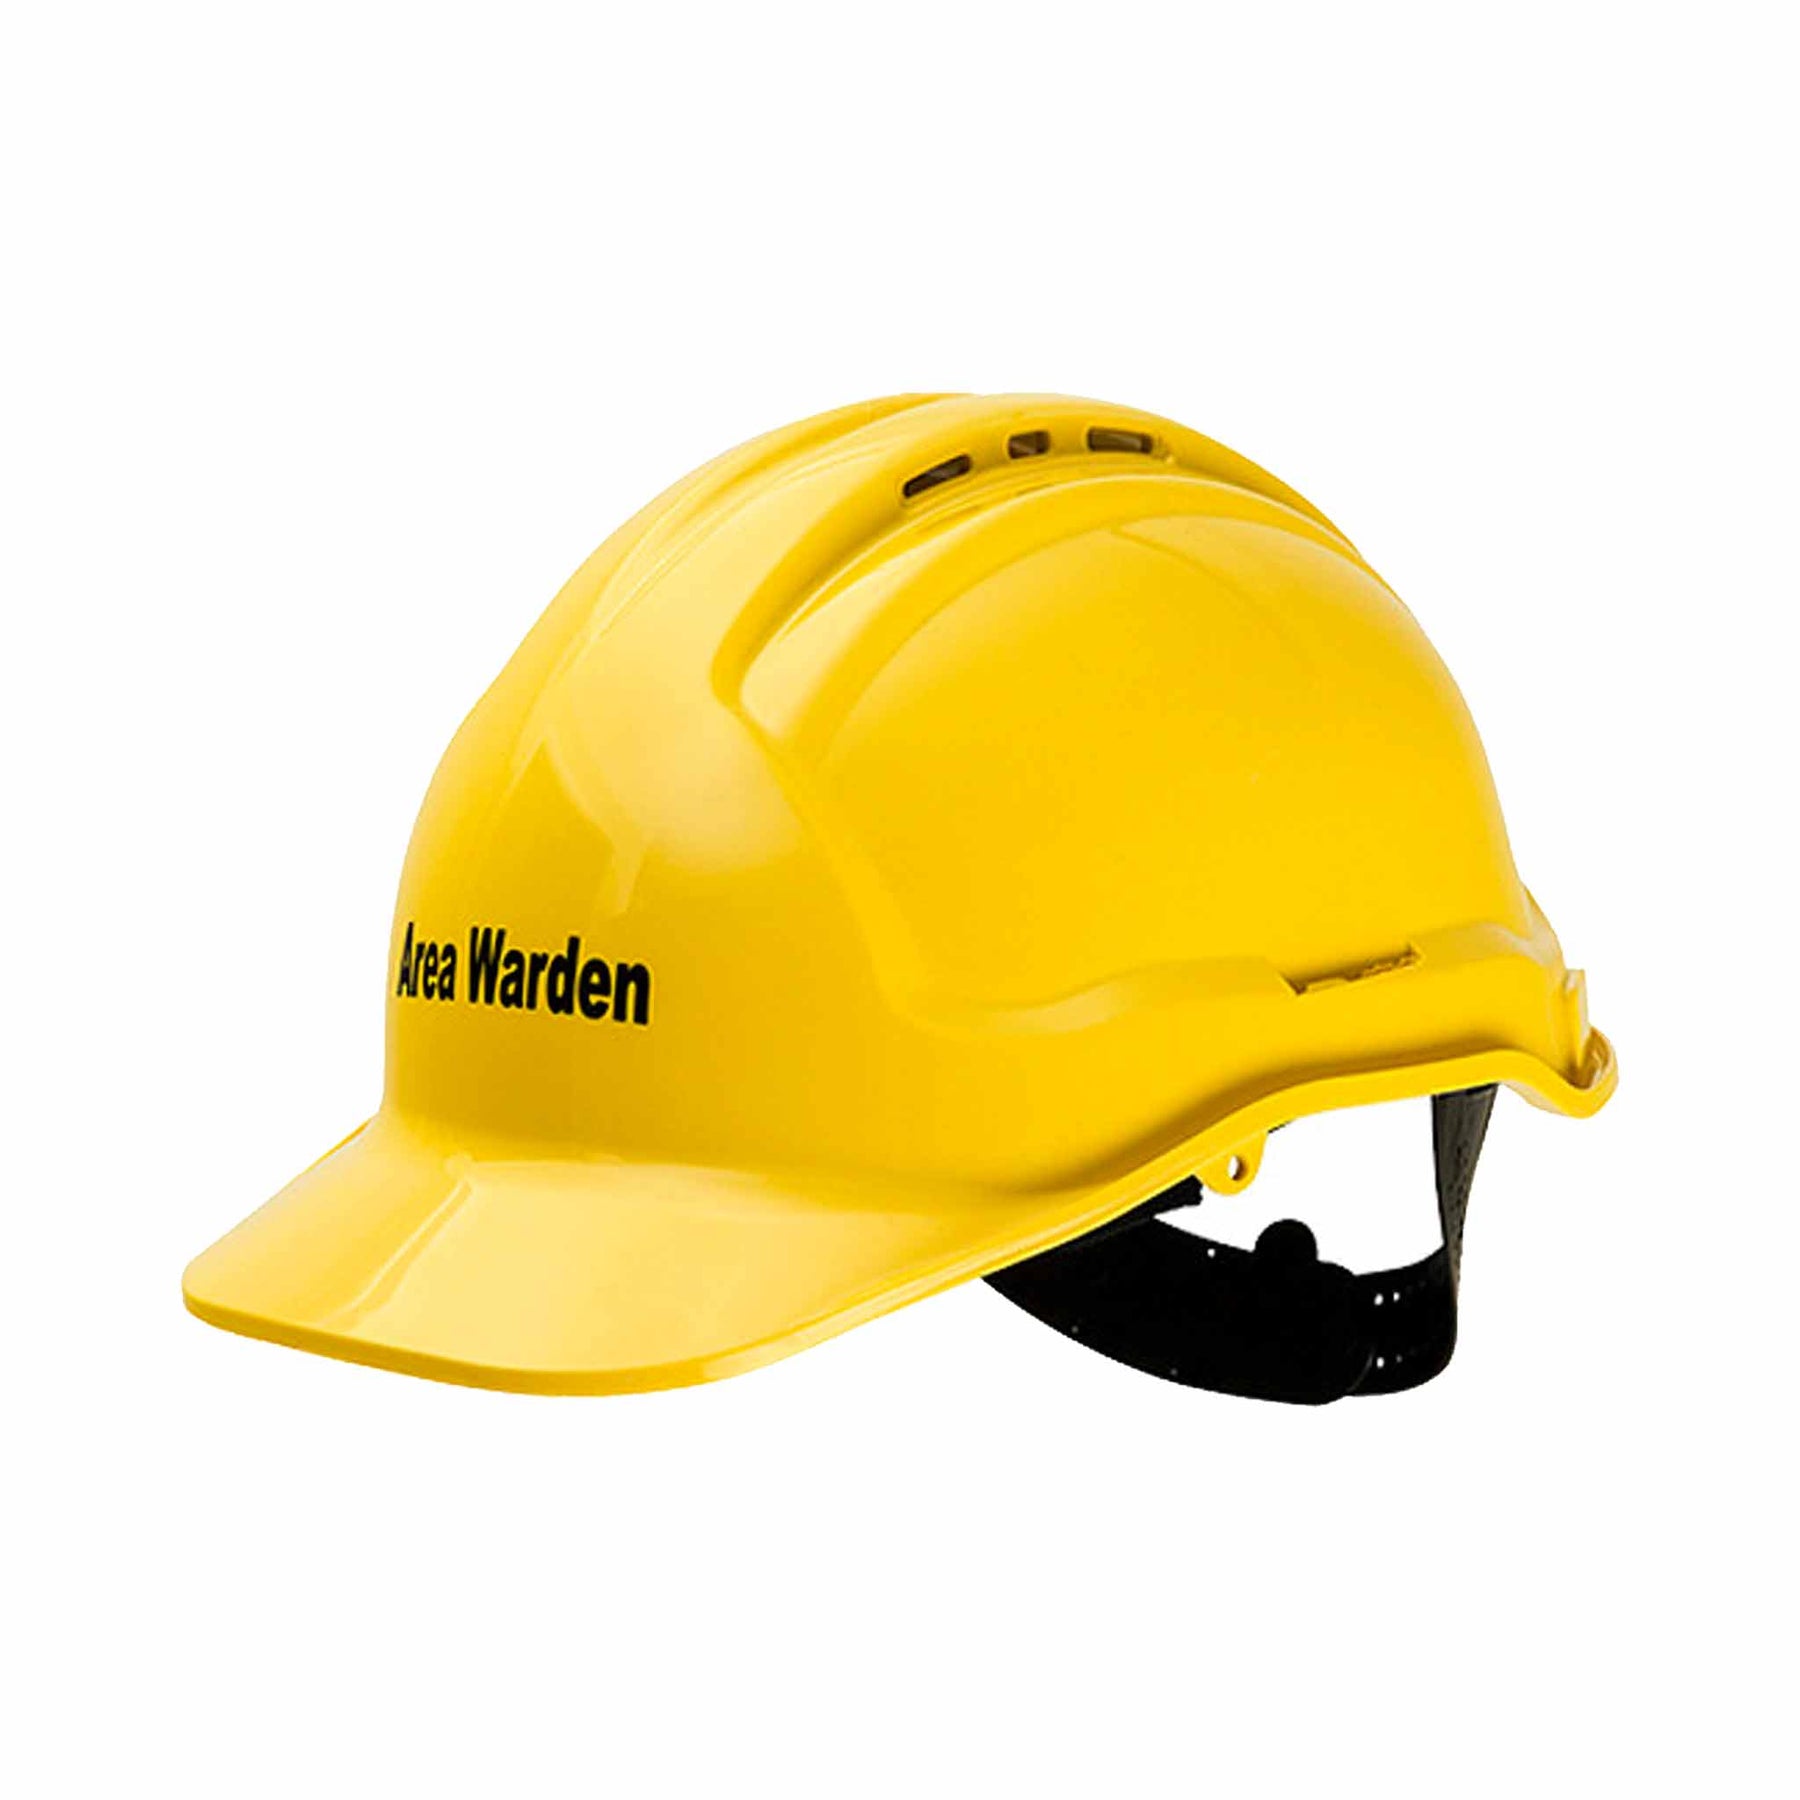 yellow area warden hard hat